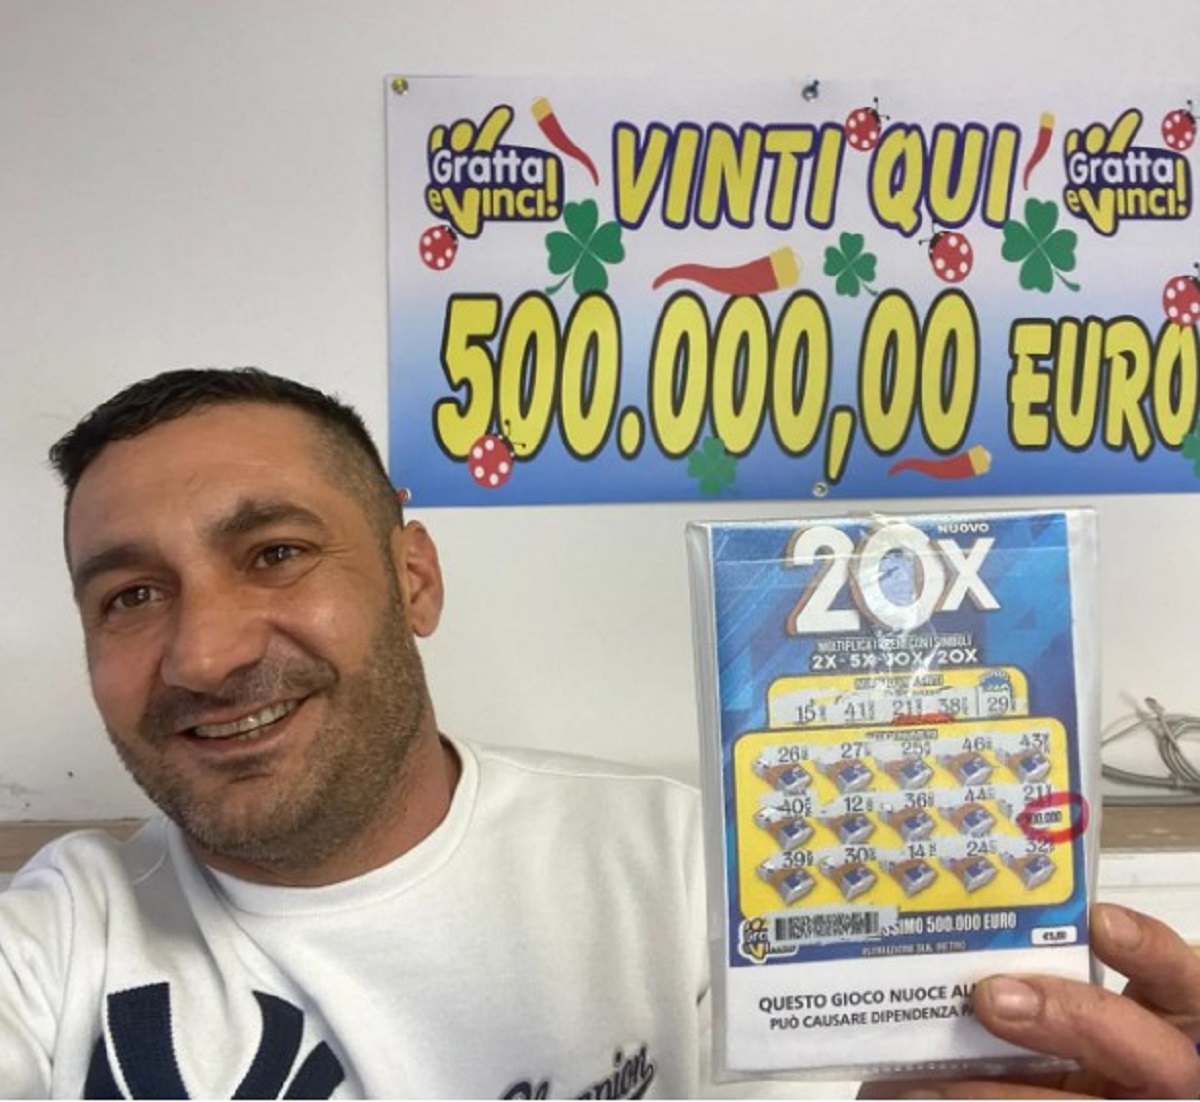 gratta e vinci da 500mila euro